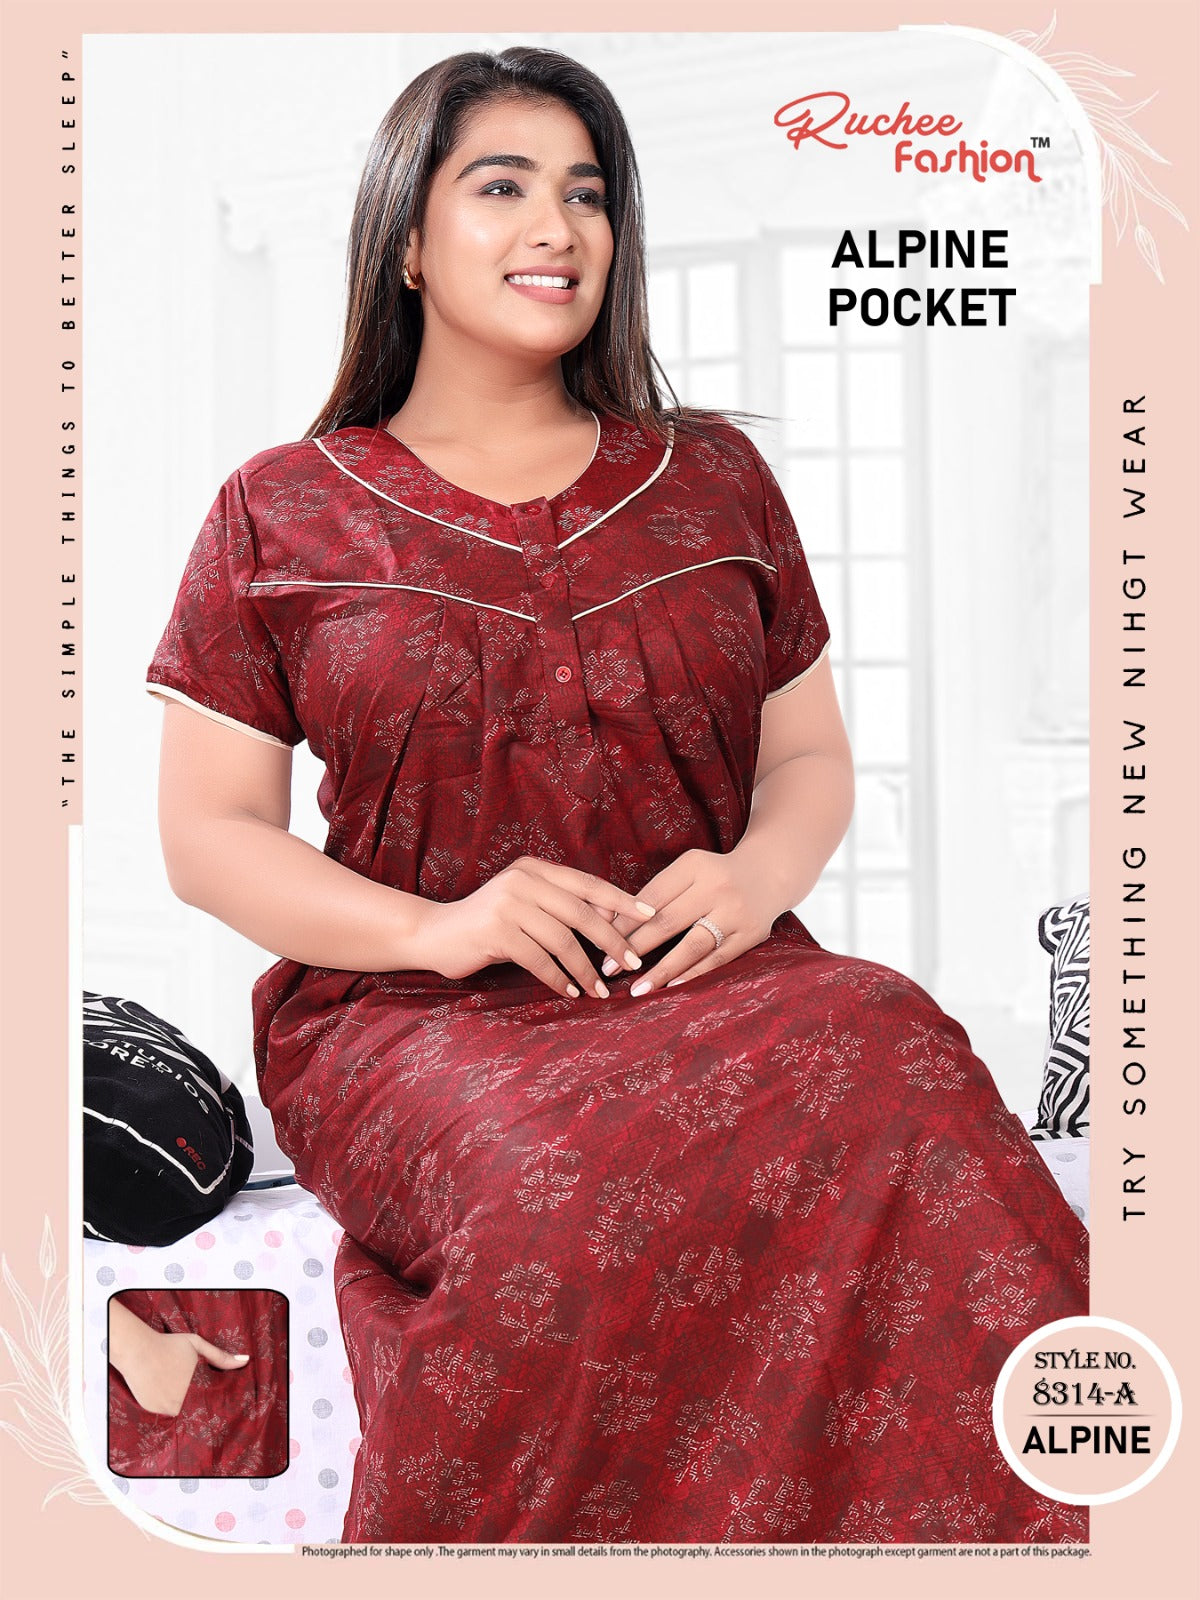 Alpine Pocket 2111 Ruchee Fashion Night Gowns